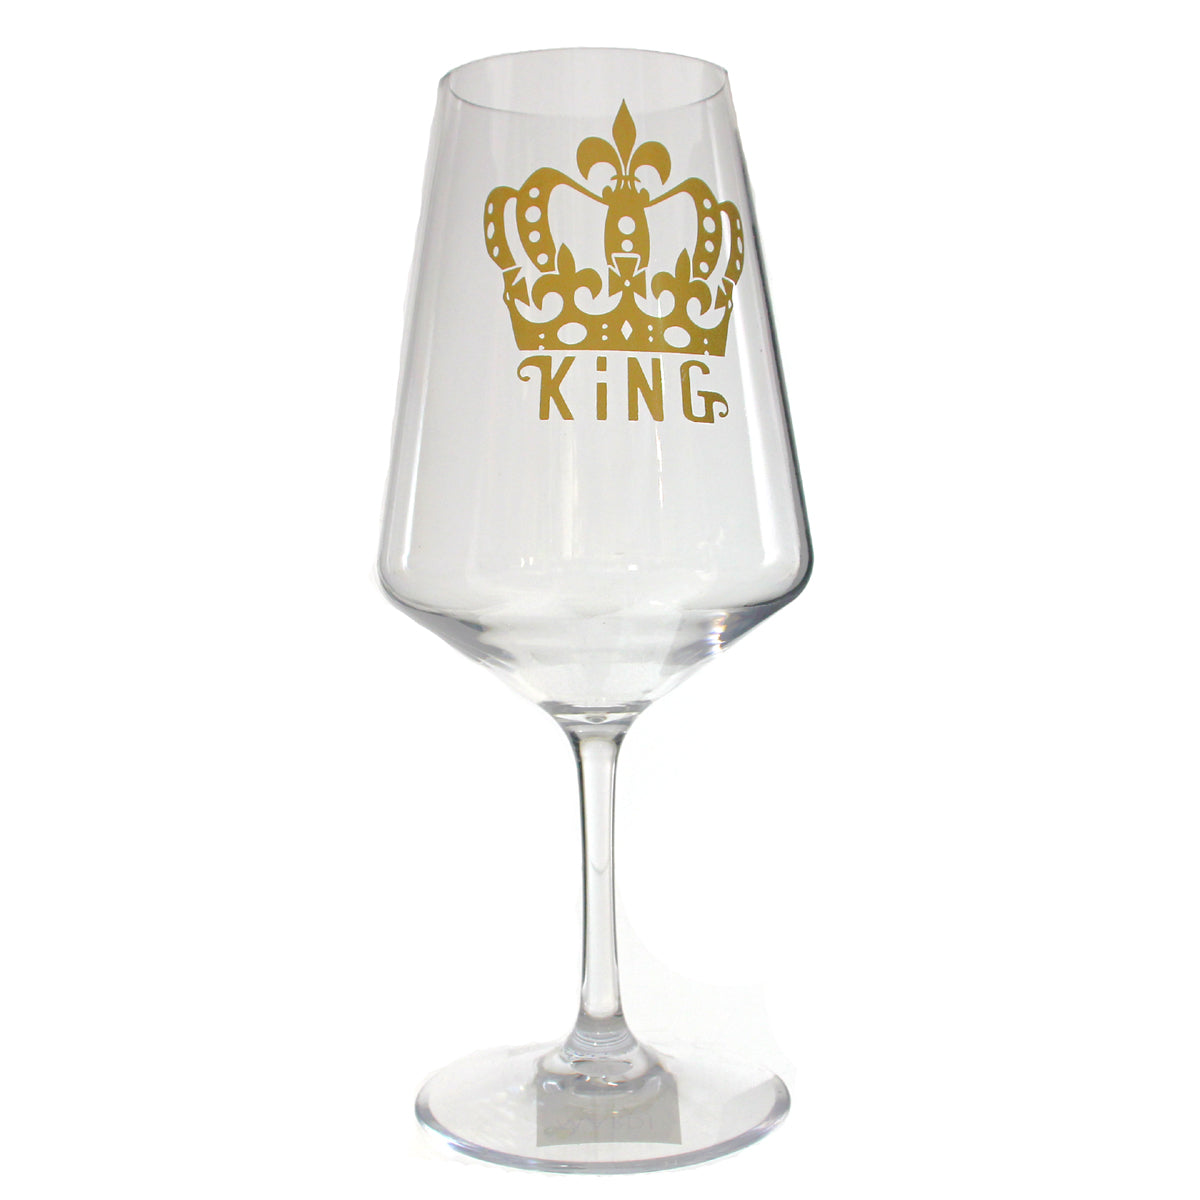 King Shatterproof Wine Glass